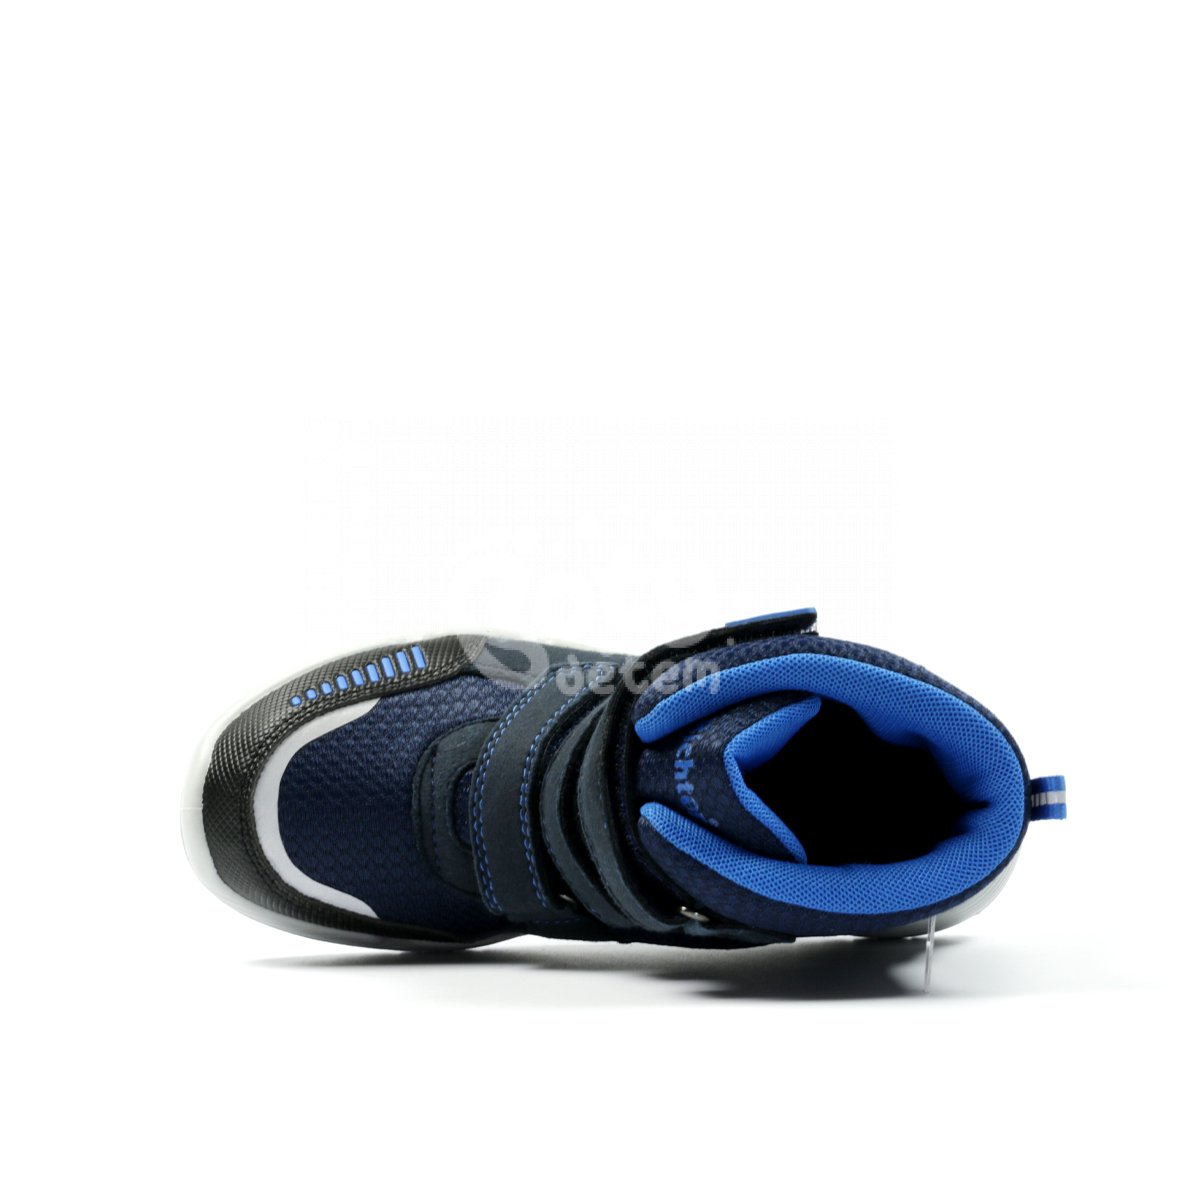 Zimní obuv Richter 6355-4191-7200 modrá